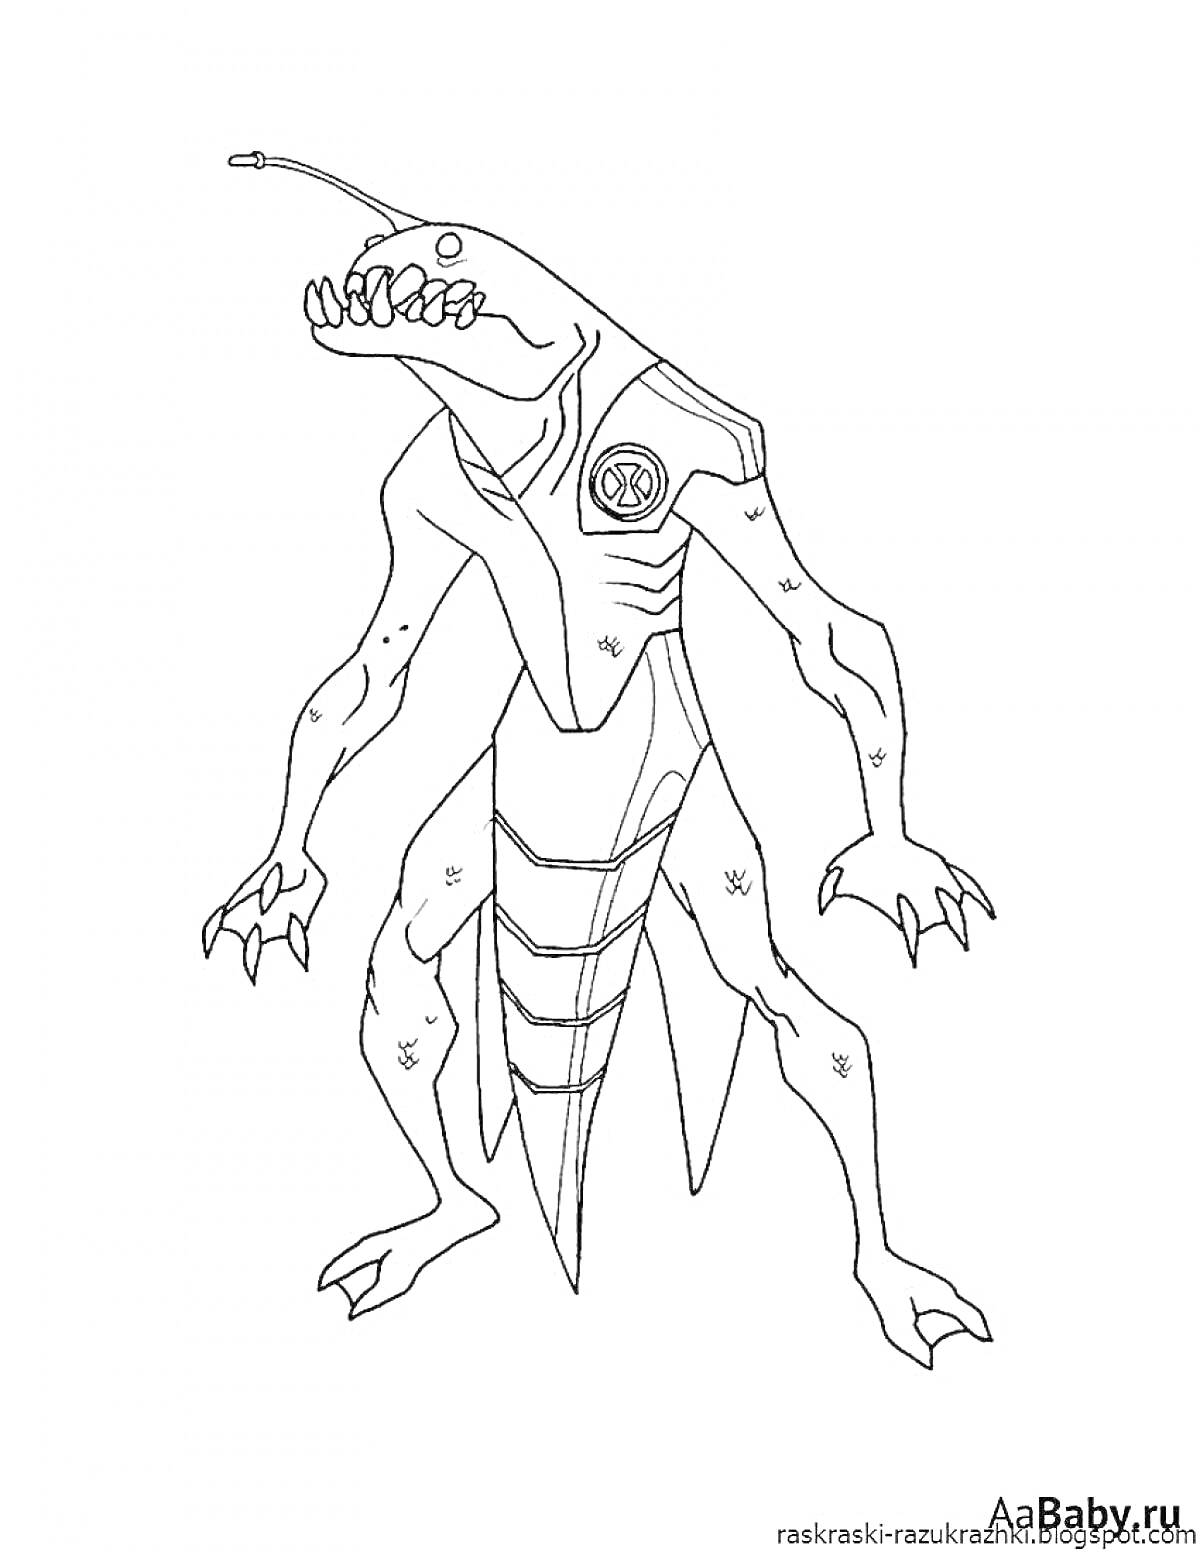 Раскраска Чужой монстр из игры Амангас с зубами, антеннами и ящерообразным телом